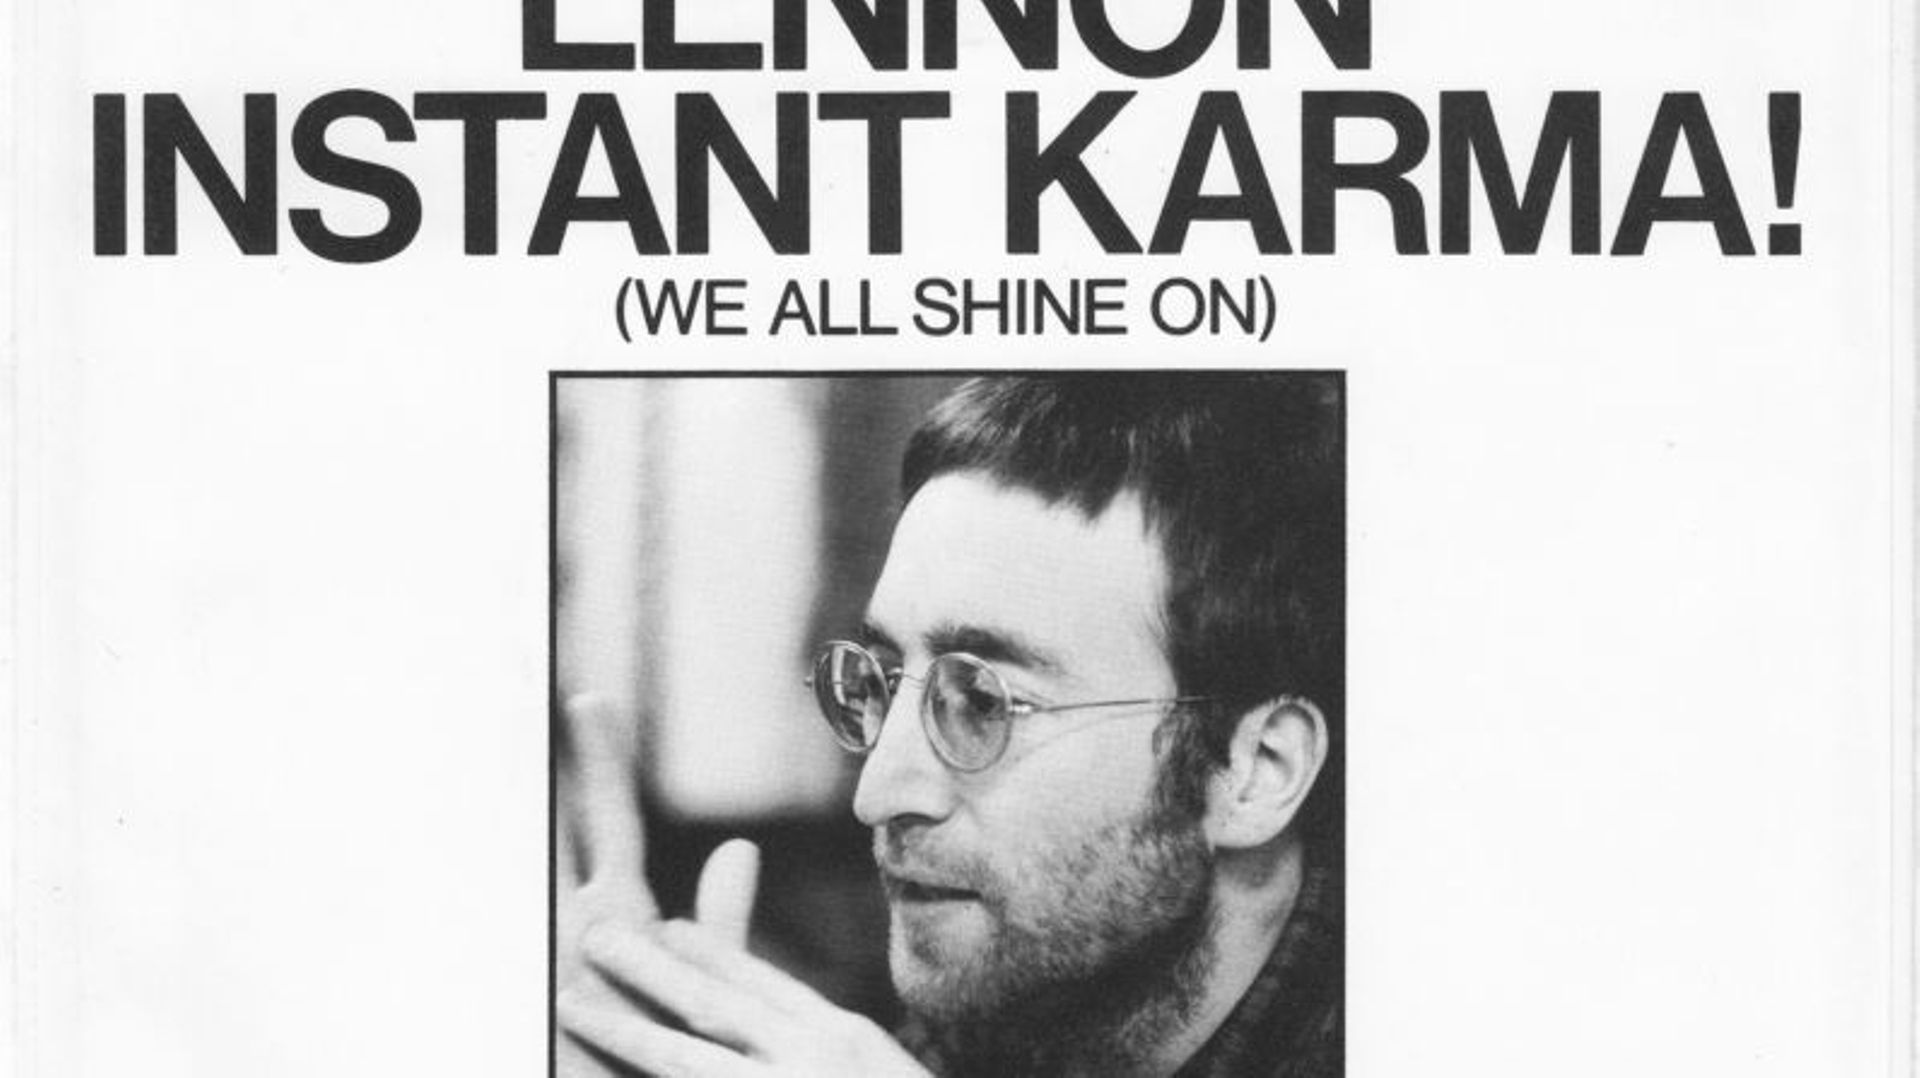 John Lennon : "Instant Karma!"